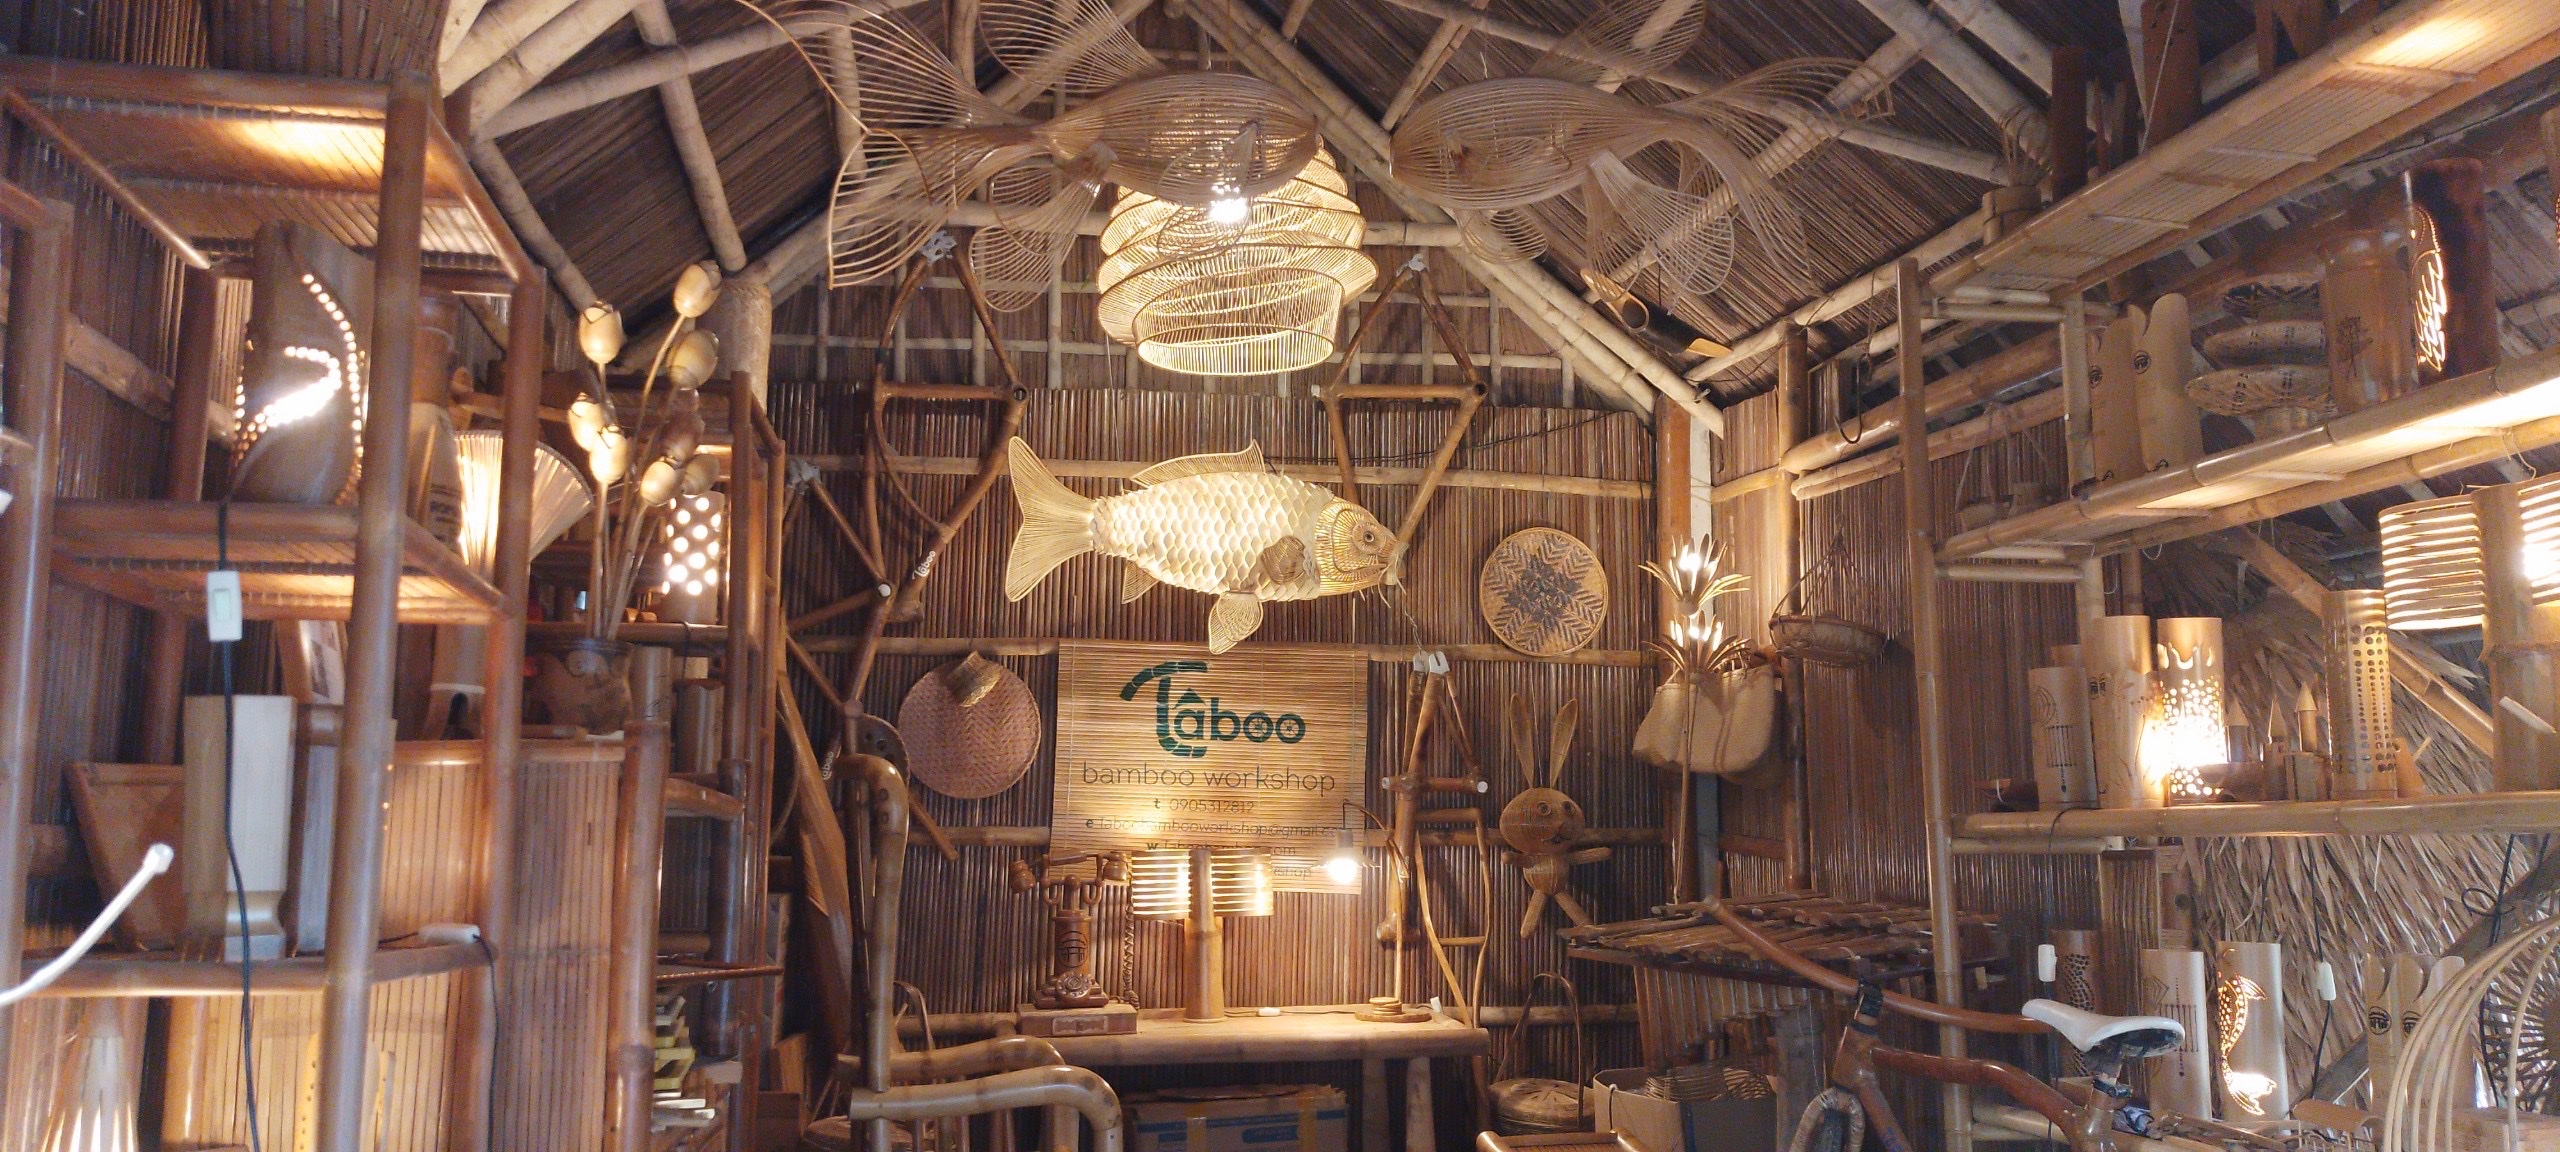 Xưởng tre Taboo Bamboo của gia đình anh Tân không chỉ được biết đến là xưởng sản xuất đồ lưu niệm, thủ công mỹ nghệ và vật dụng gia đình bằng tre, mà còn là một trong những điểm tham quan thu hút khách du lịch.